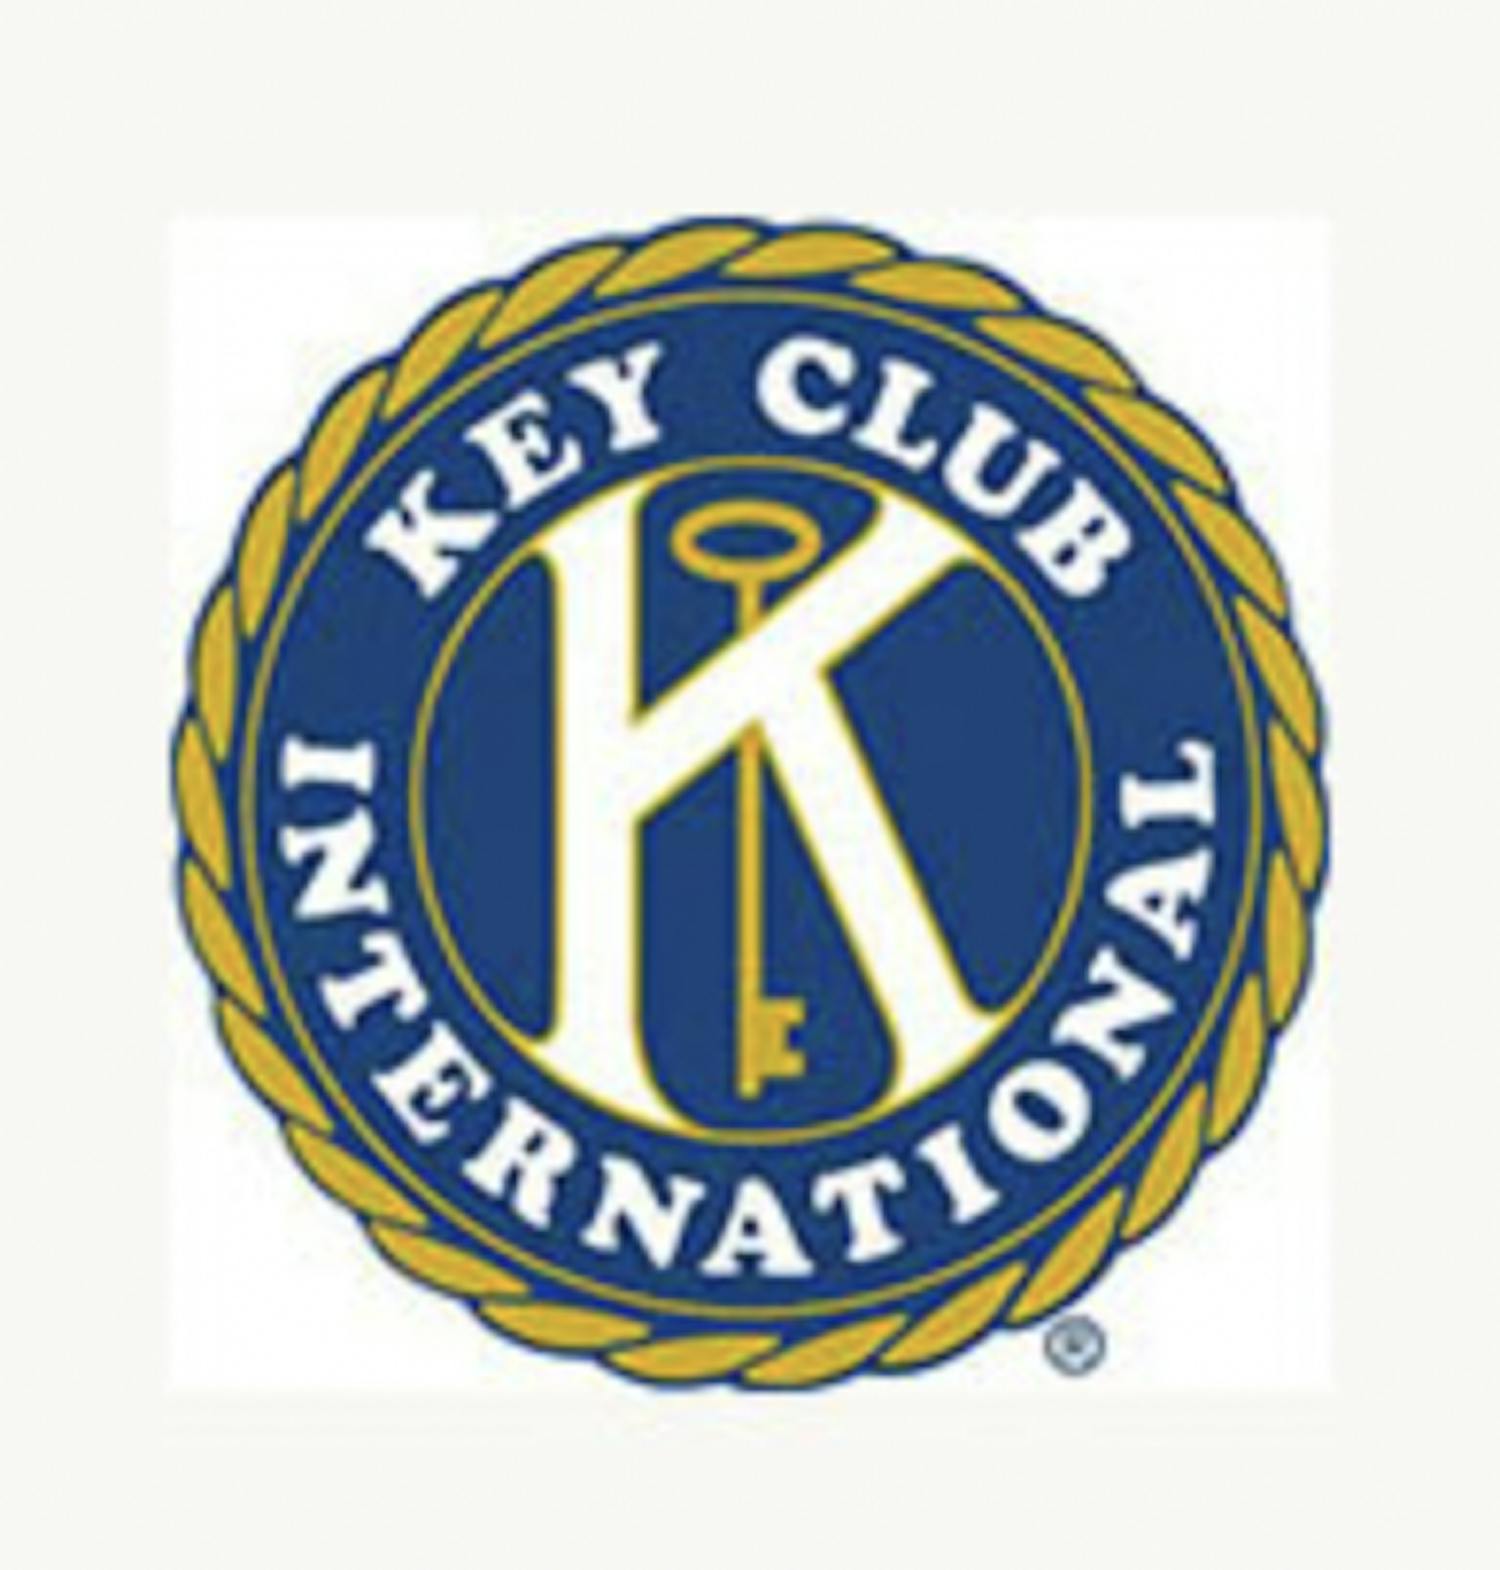 Key Club International